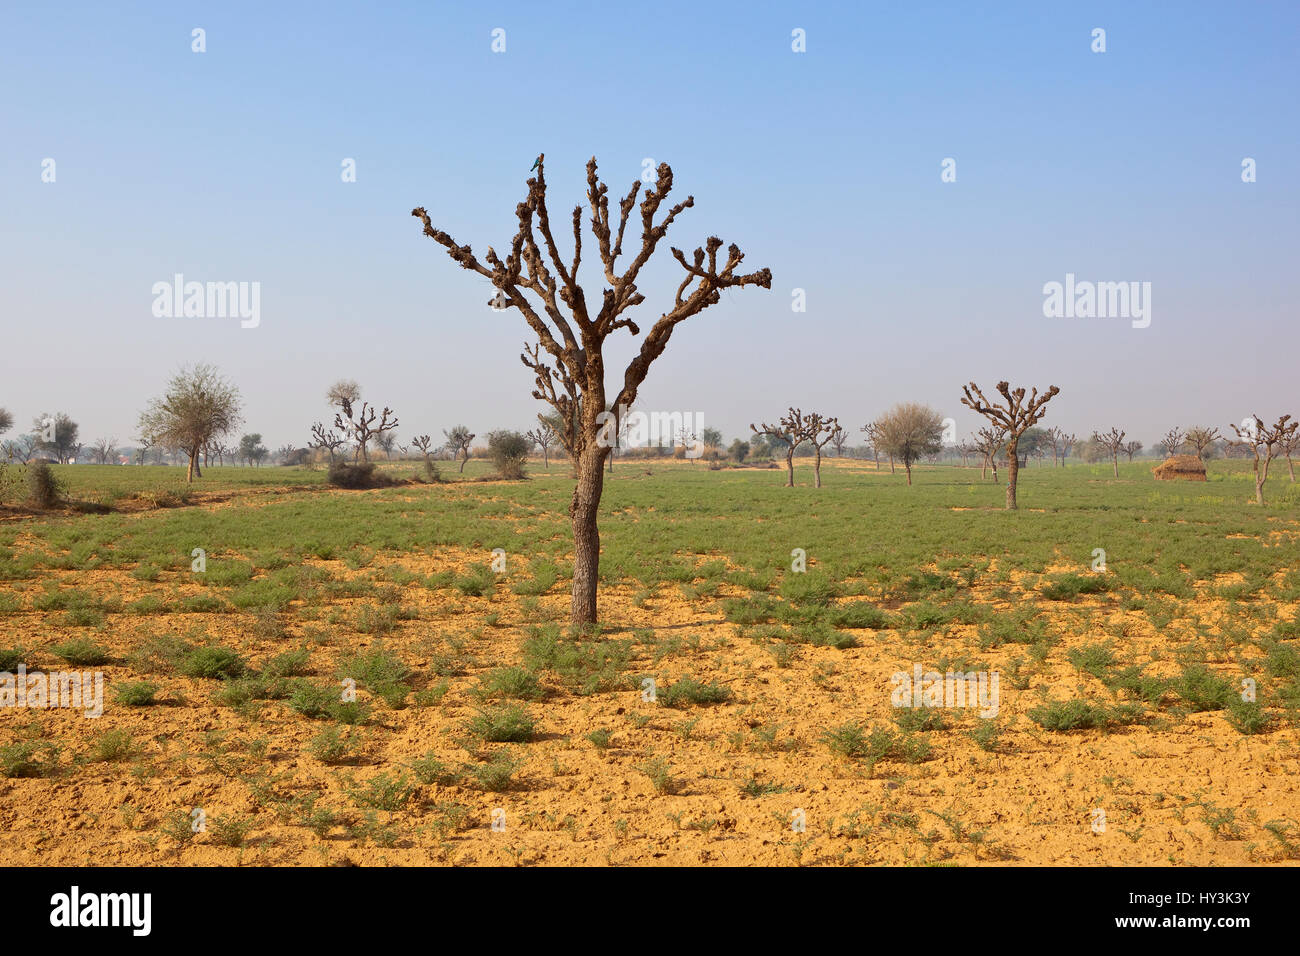 Les arbres étêtés dans le paysage agricole de sable du Rajasthan inde avec des cultures de pois chiches et de lentilles sous un ciel bleu Banque D'Images